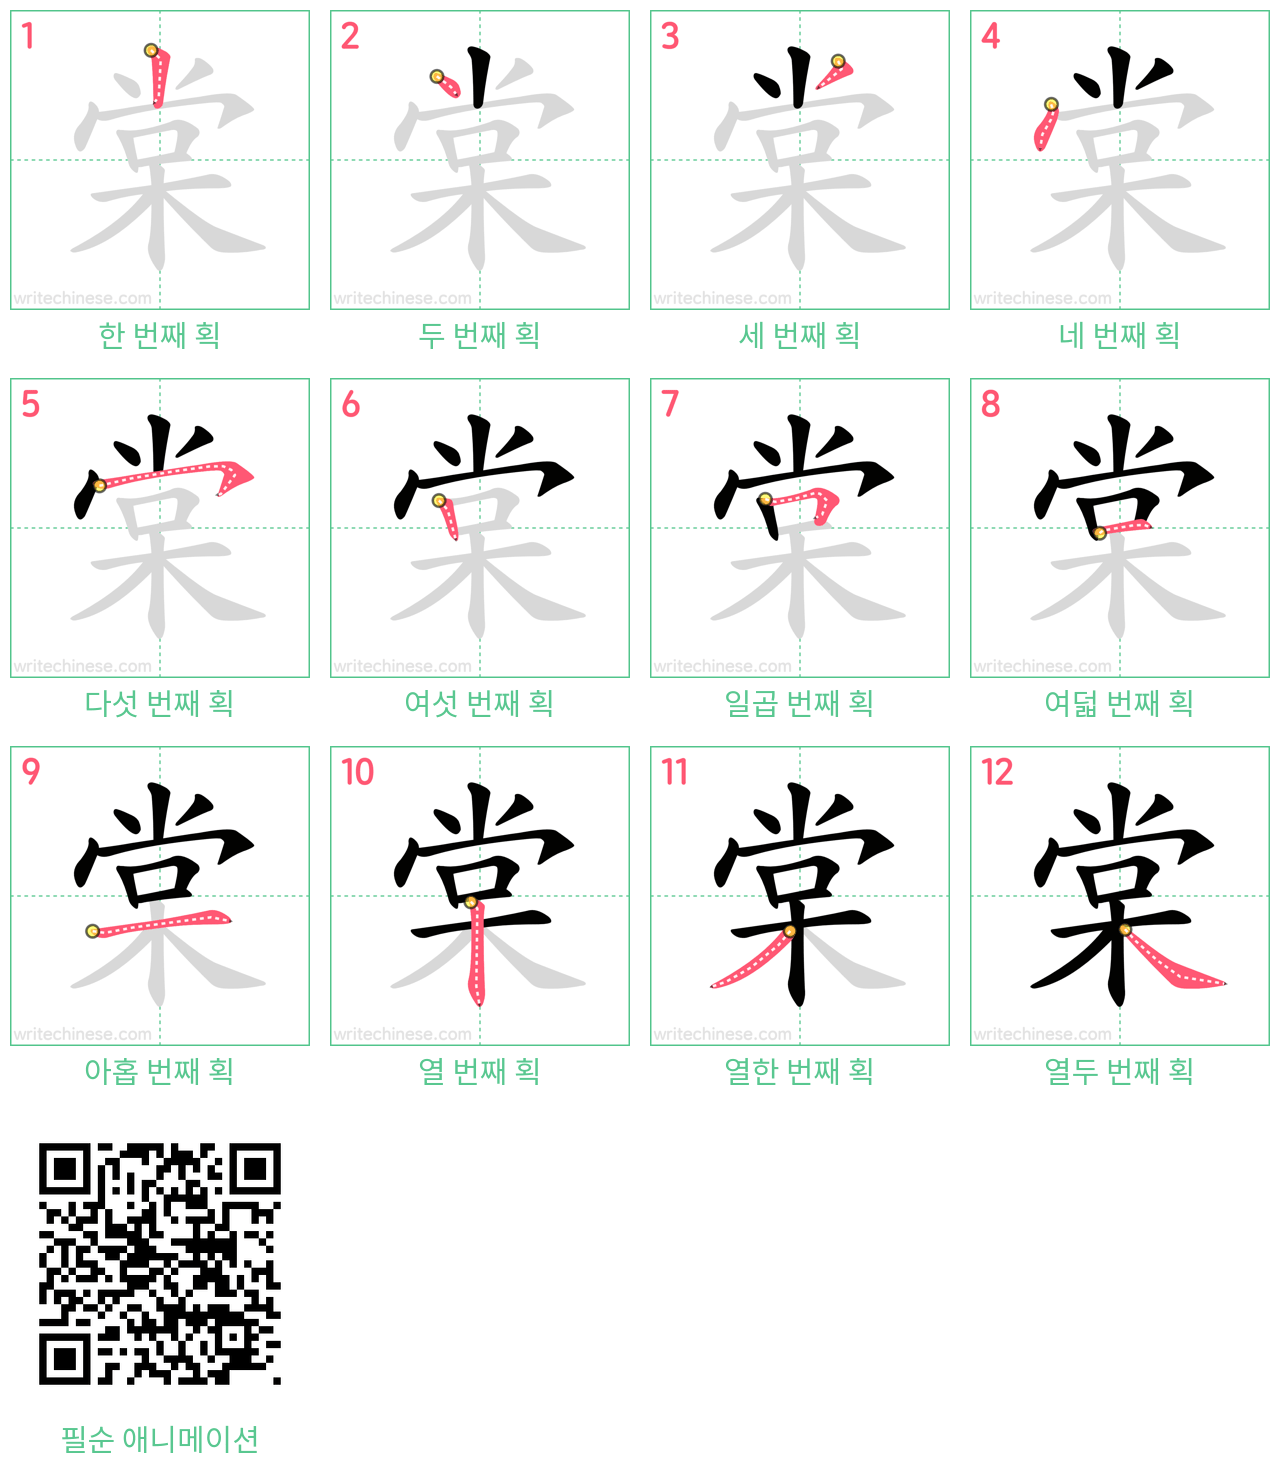 棠 step-by-step stroke order diagrams